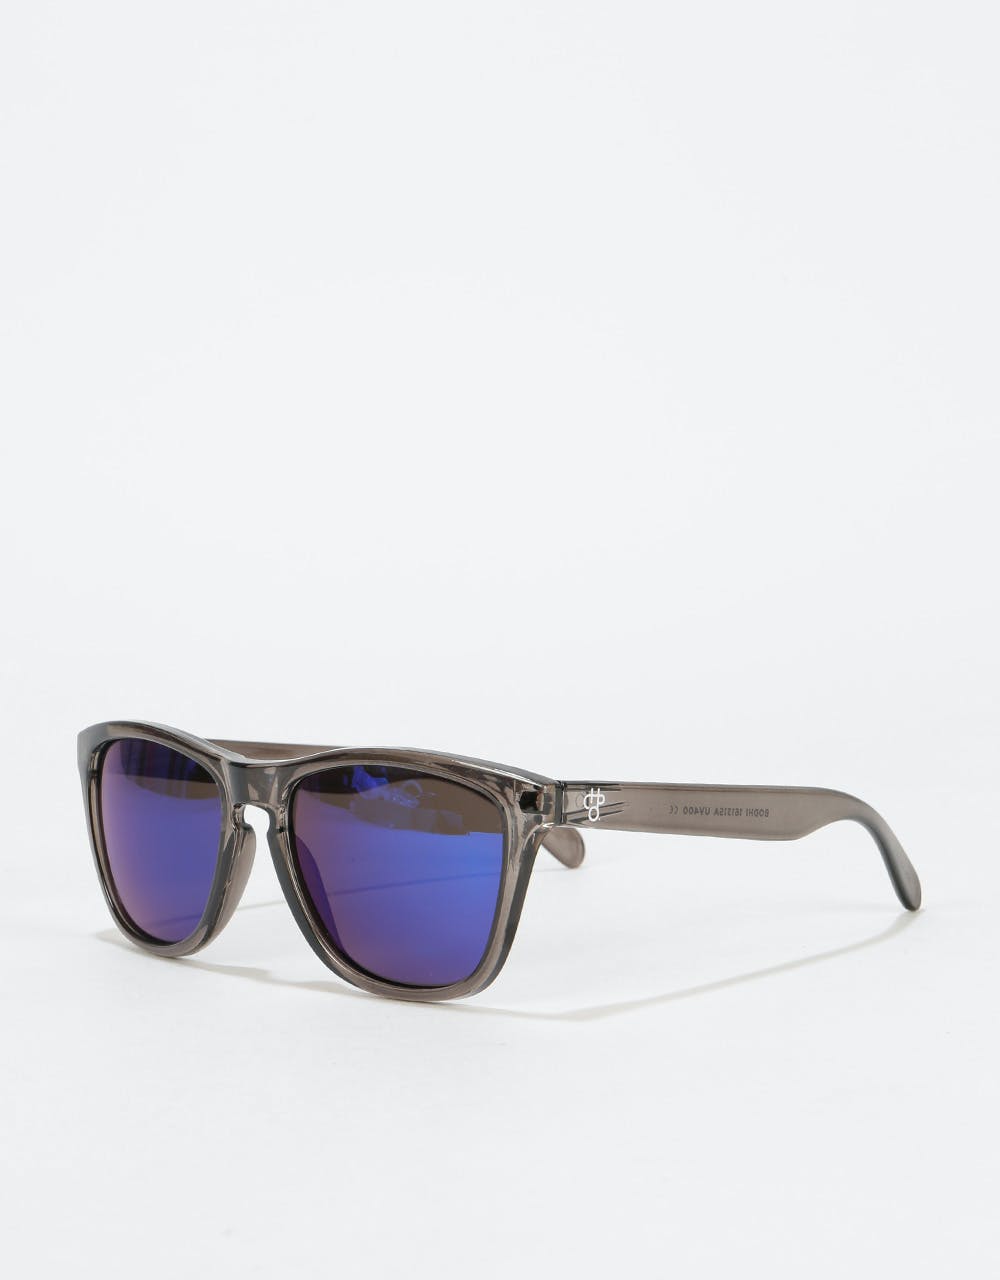 CHPO Bodhi Sunglasses - Grey/Blue Mirror